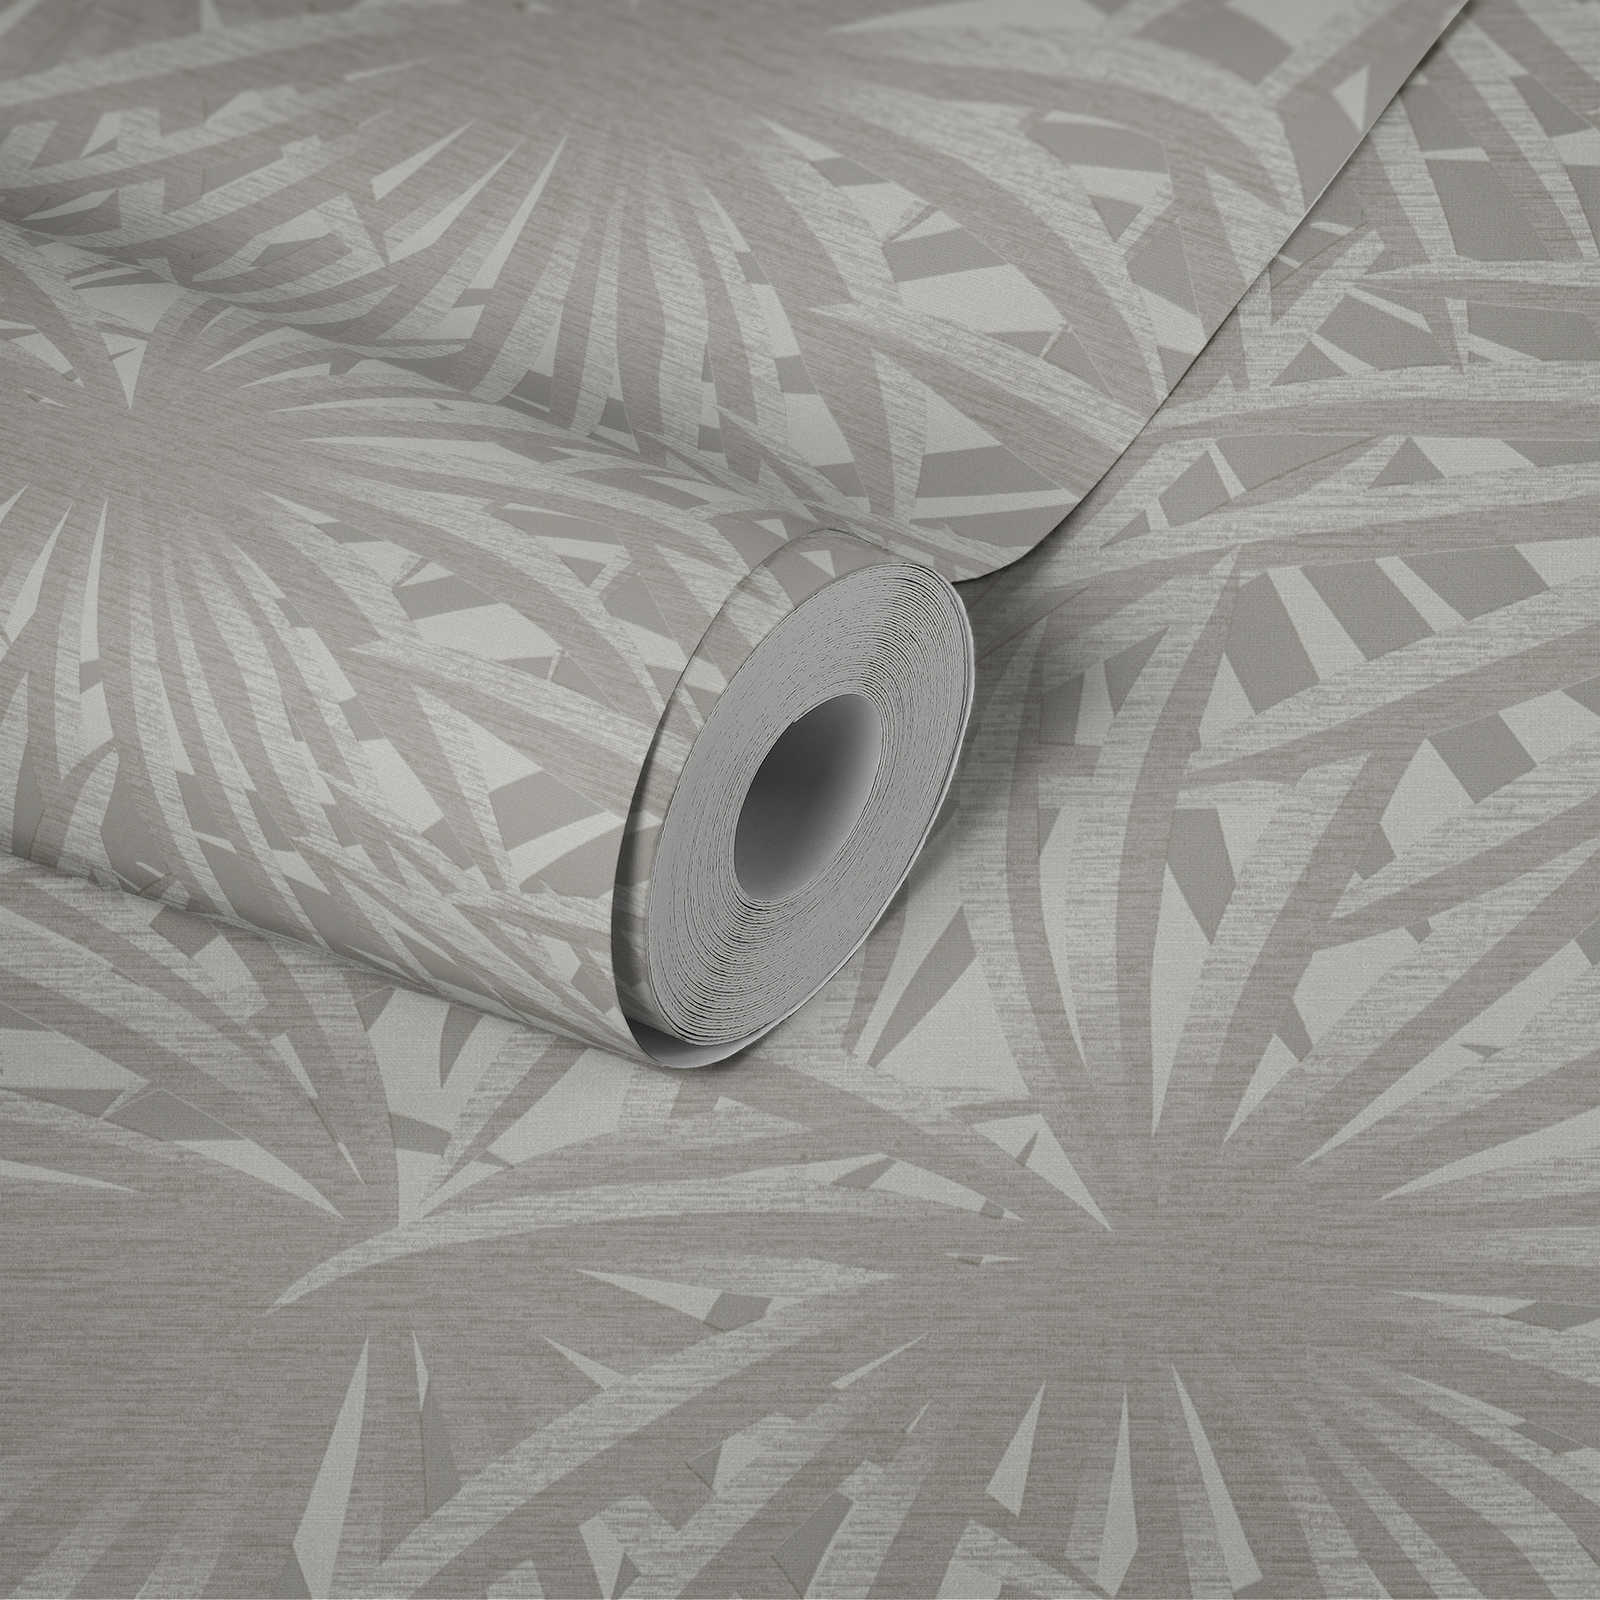             Vliestapete Blätterdesign mit Metallic-Glanz – Grau, Metallic, Weiß
        